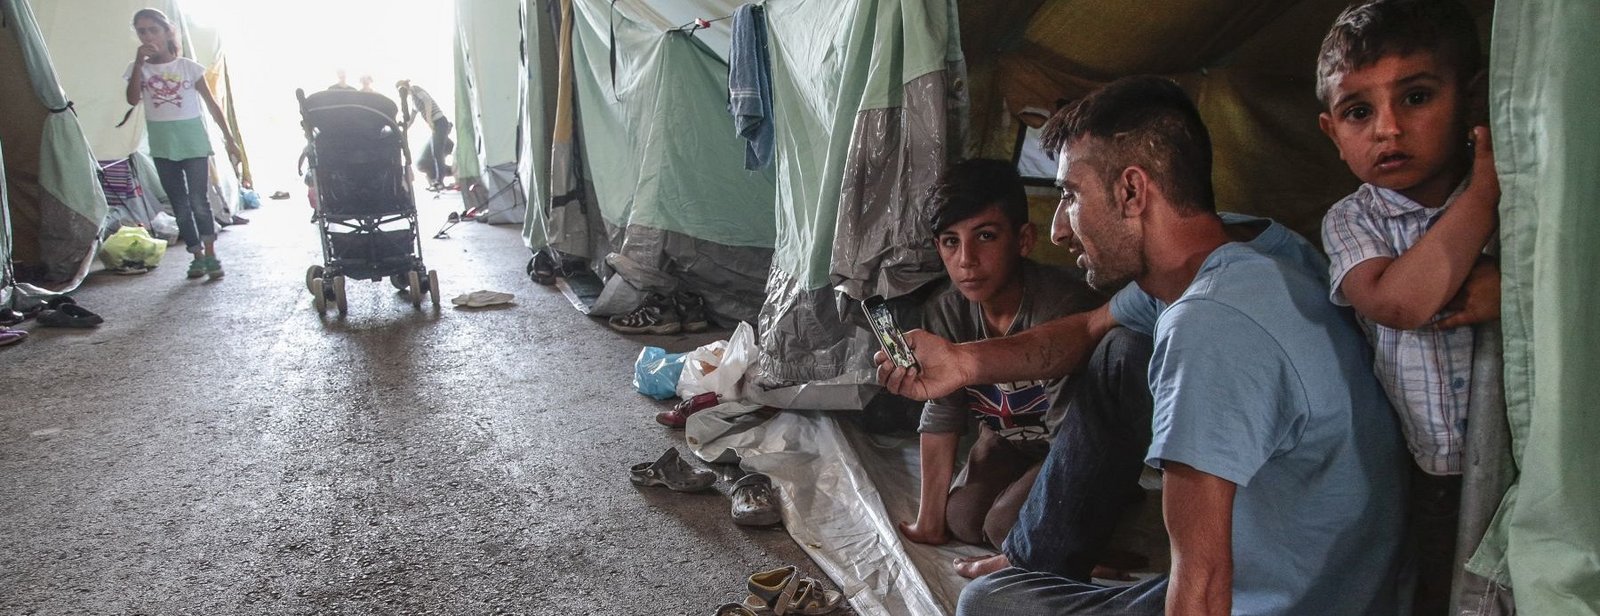 Zwei Kinder im Flüchtlingscamp in Griechenland